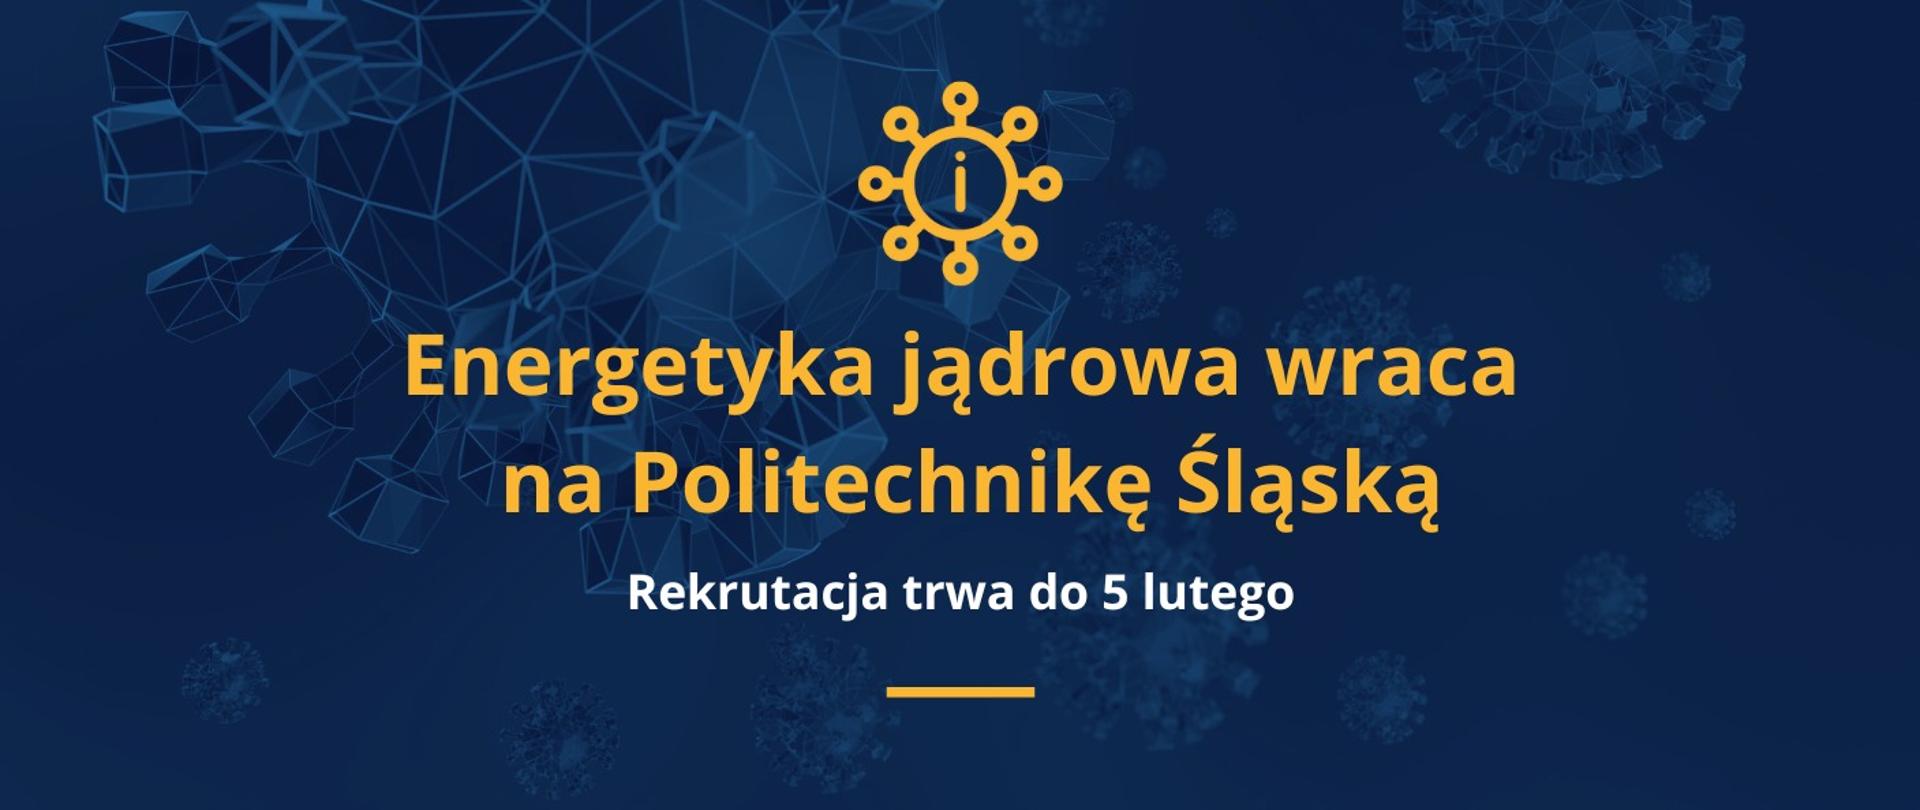 Grafika - na niebieskim tle napis Energetyka jądrowa wraca na Politechnikę Śląską - rekrutacja do 5 lutego.